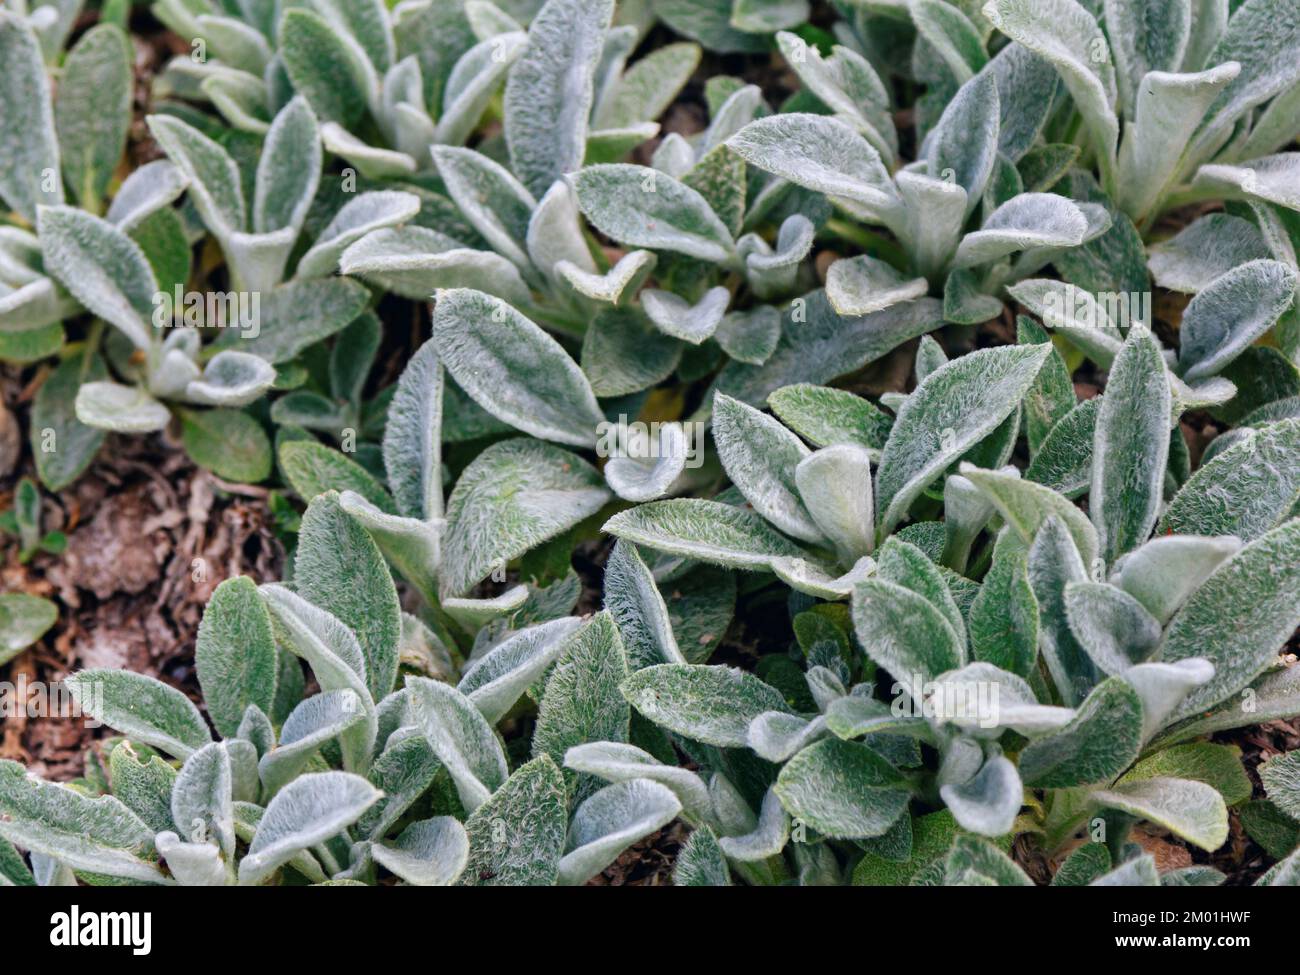 Gros plan Stachys plante à fleurs décorative byzantine ou laineux de la famille des Mint Lamiaceae en pleine croissance dans le jardin Banque D'Images